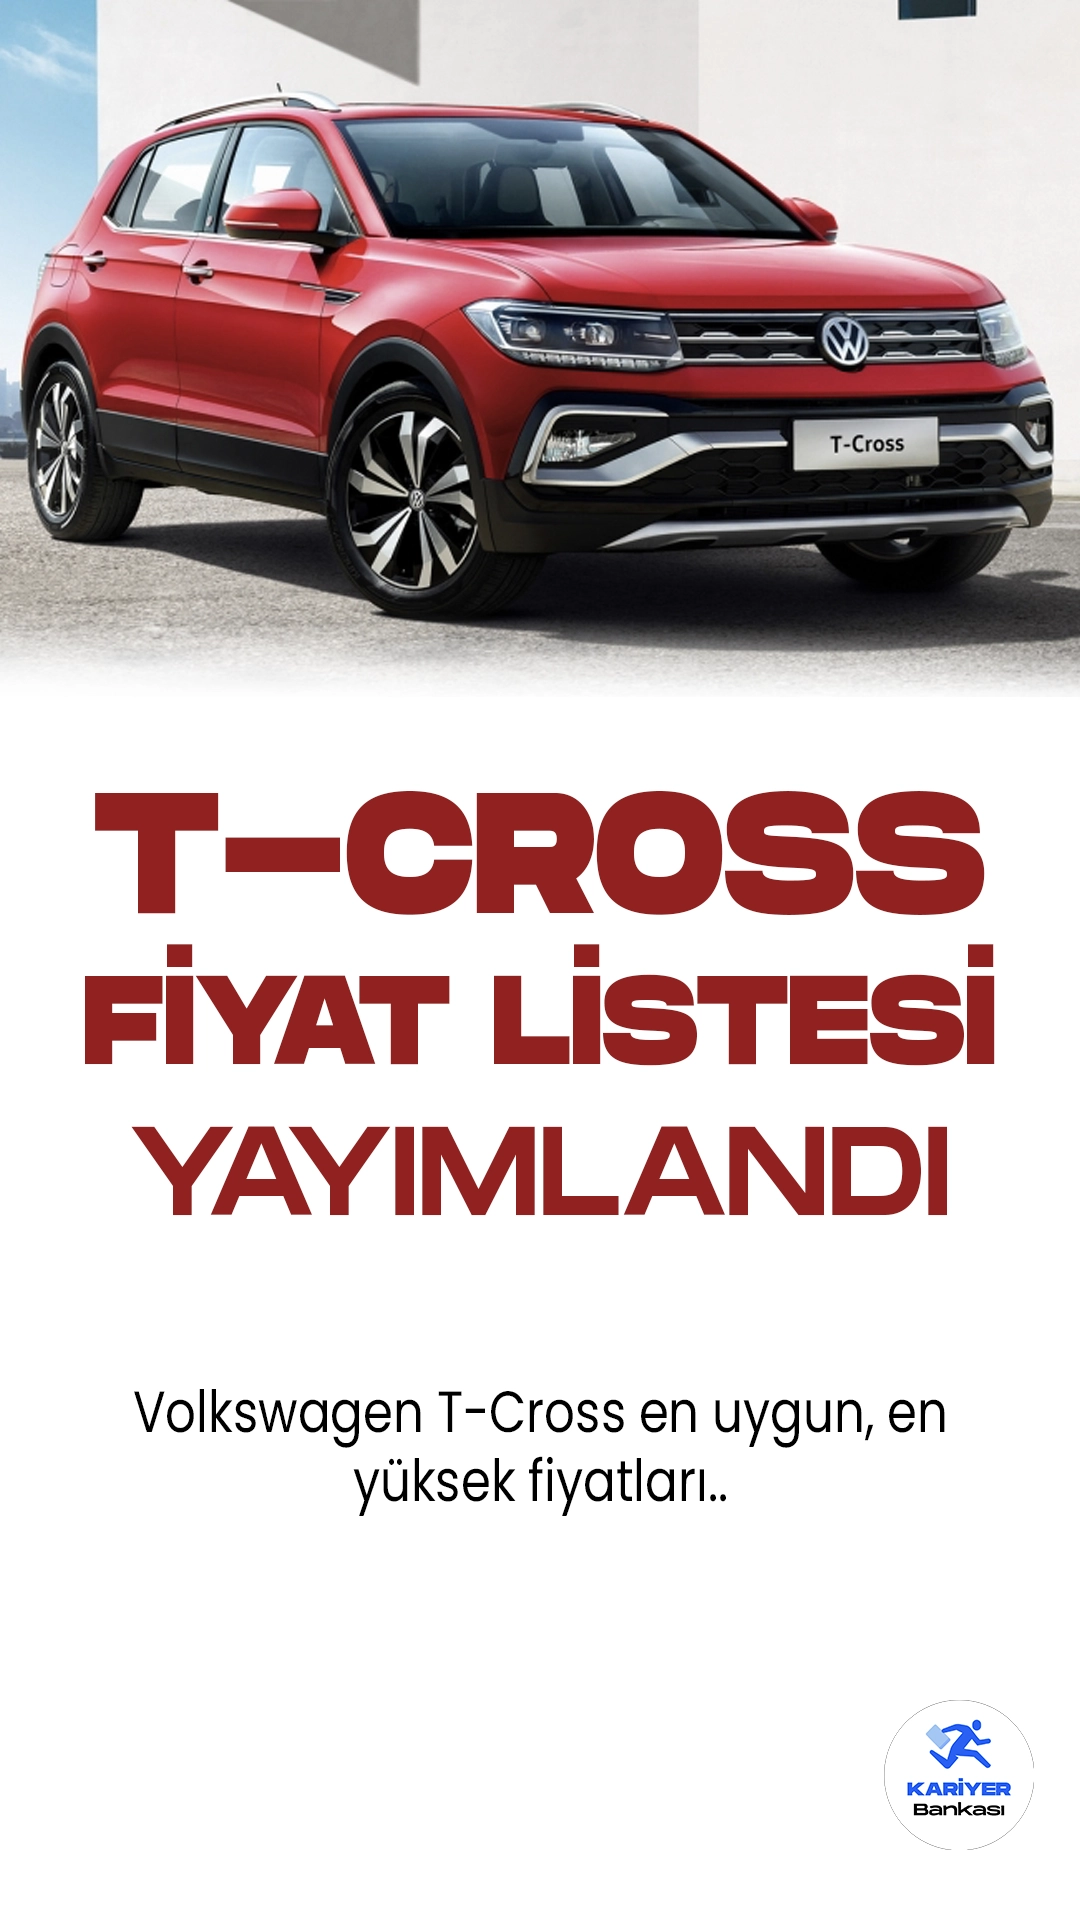 Volkswagen T-Cross Haziran 2023 Fiyat Listesi Yayımlandı!Volkswagen, yeni kompakt SUV modeli T-Cross'u piyasaya sürüyor. T-Cross, şık tasarımı ve üstün performansıyla dikkat çekiyor. Bu kompakt araç, her türlü yol koşulunda rahatlıkla kullanılabilecek özelliklere sahip.